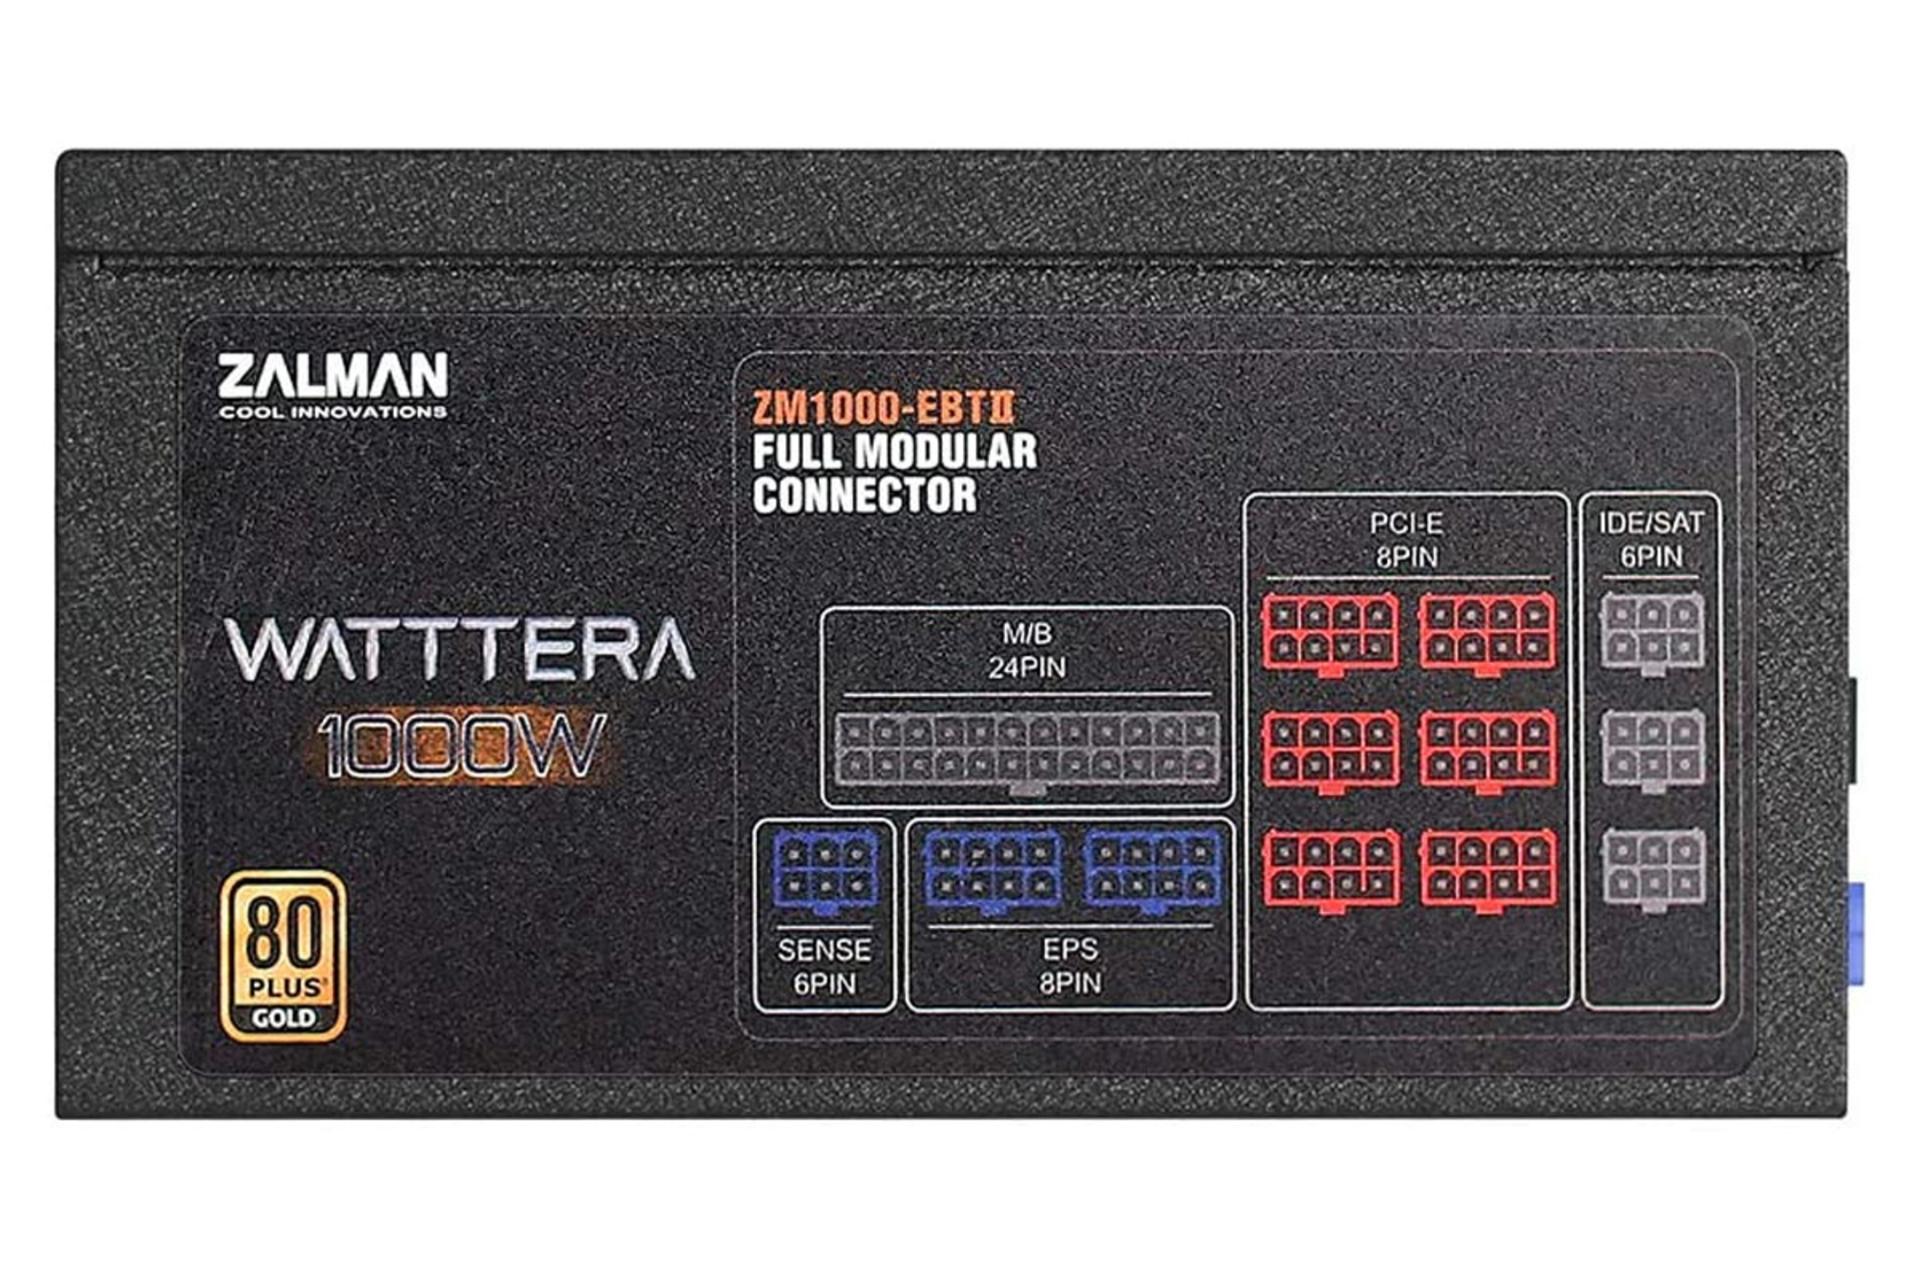 برچسب توضیحات پاور کامپیوتر زالمن WATTTERA ZM1000-EBTII با توان 1000 وات